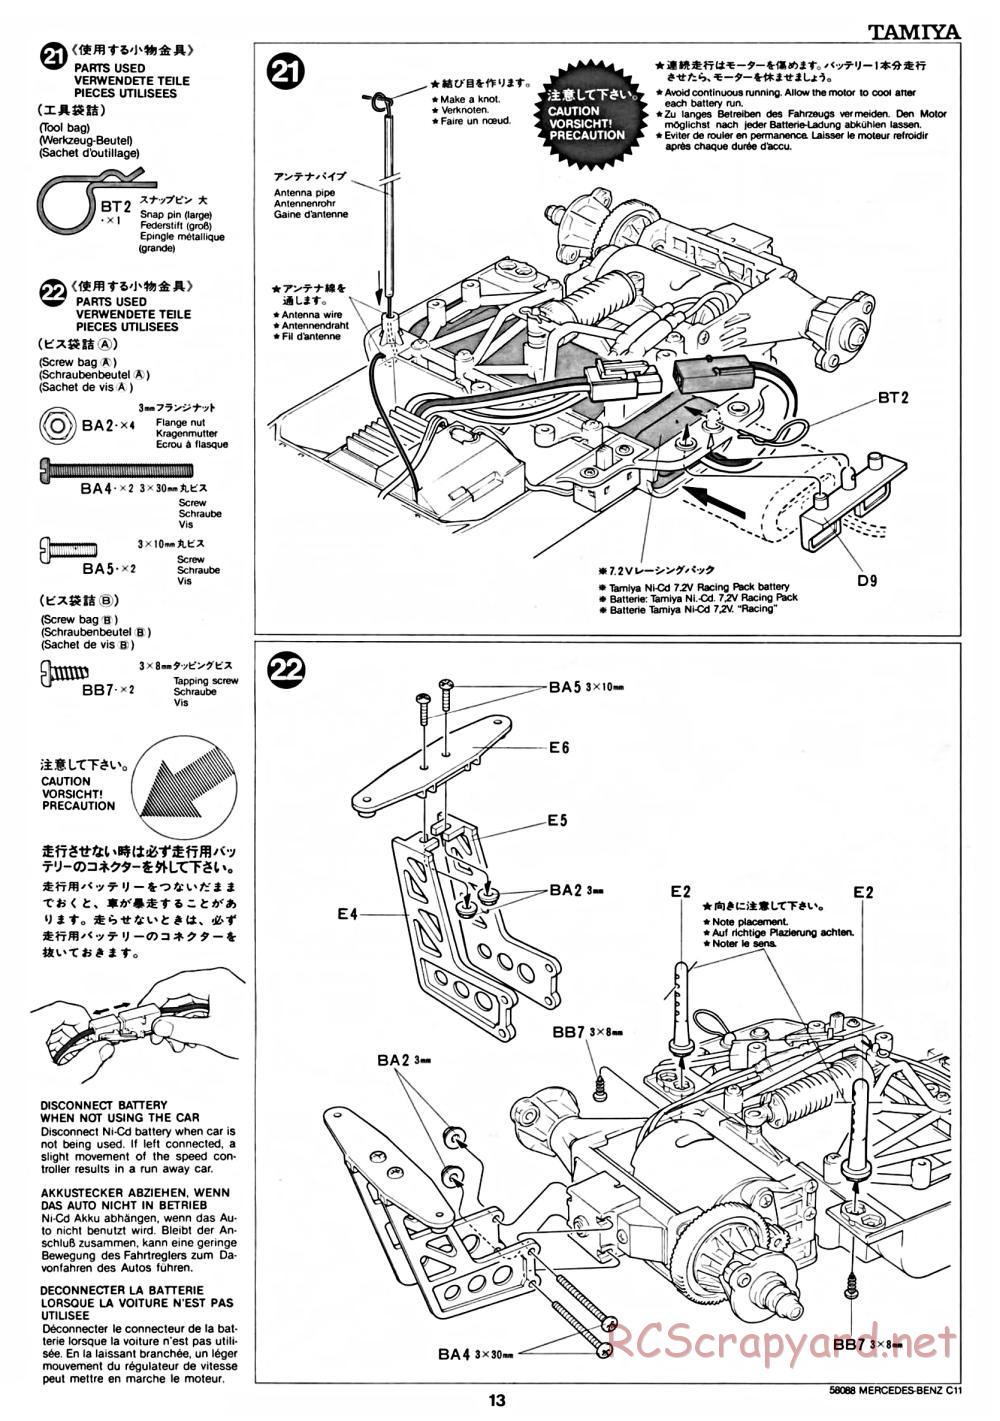 Tamiya - Mercedes Benz C11 - 58088 - Manual - Page 13